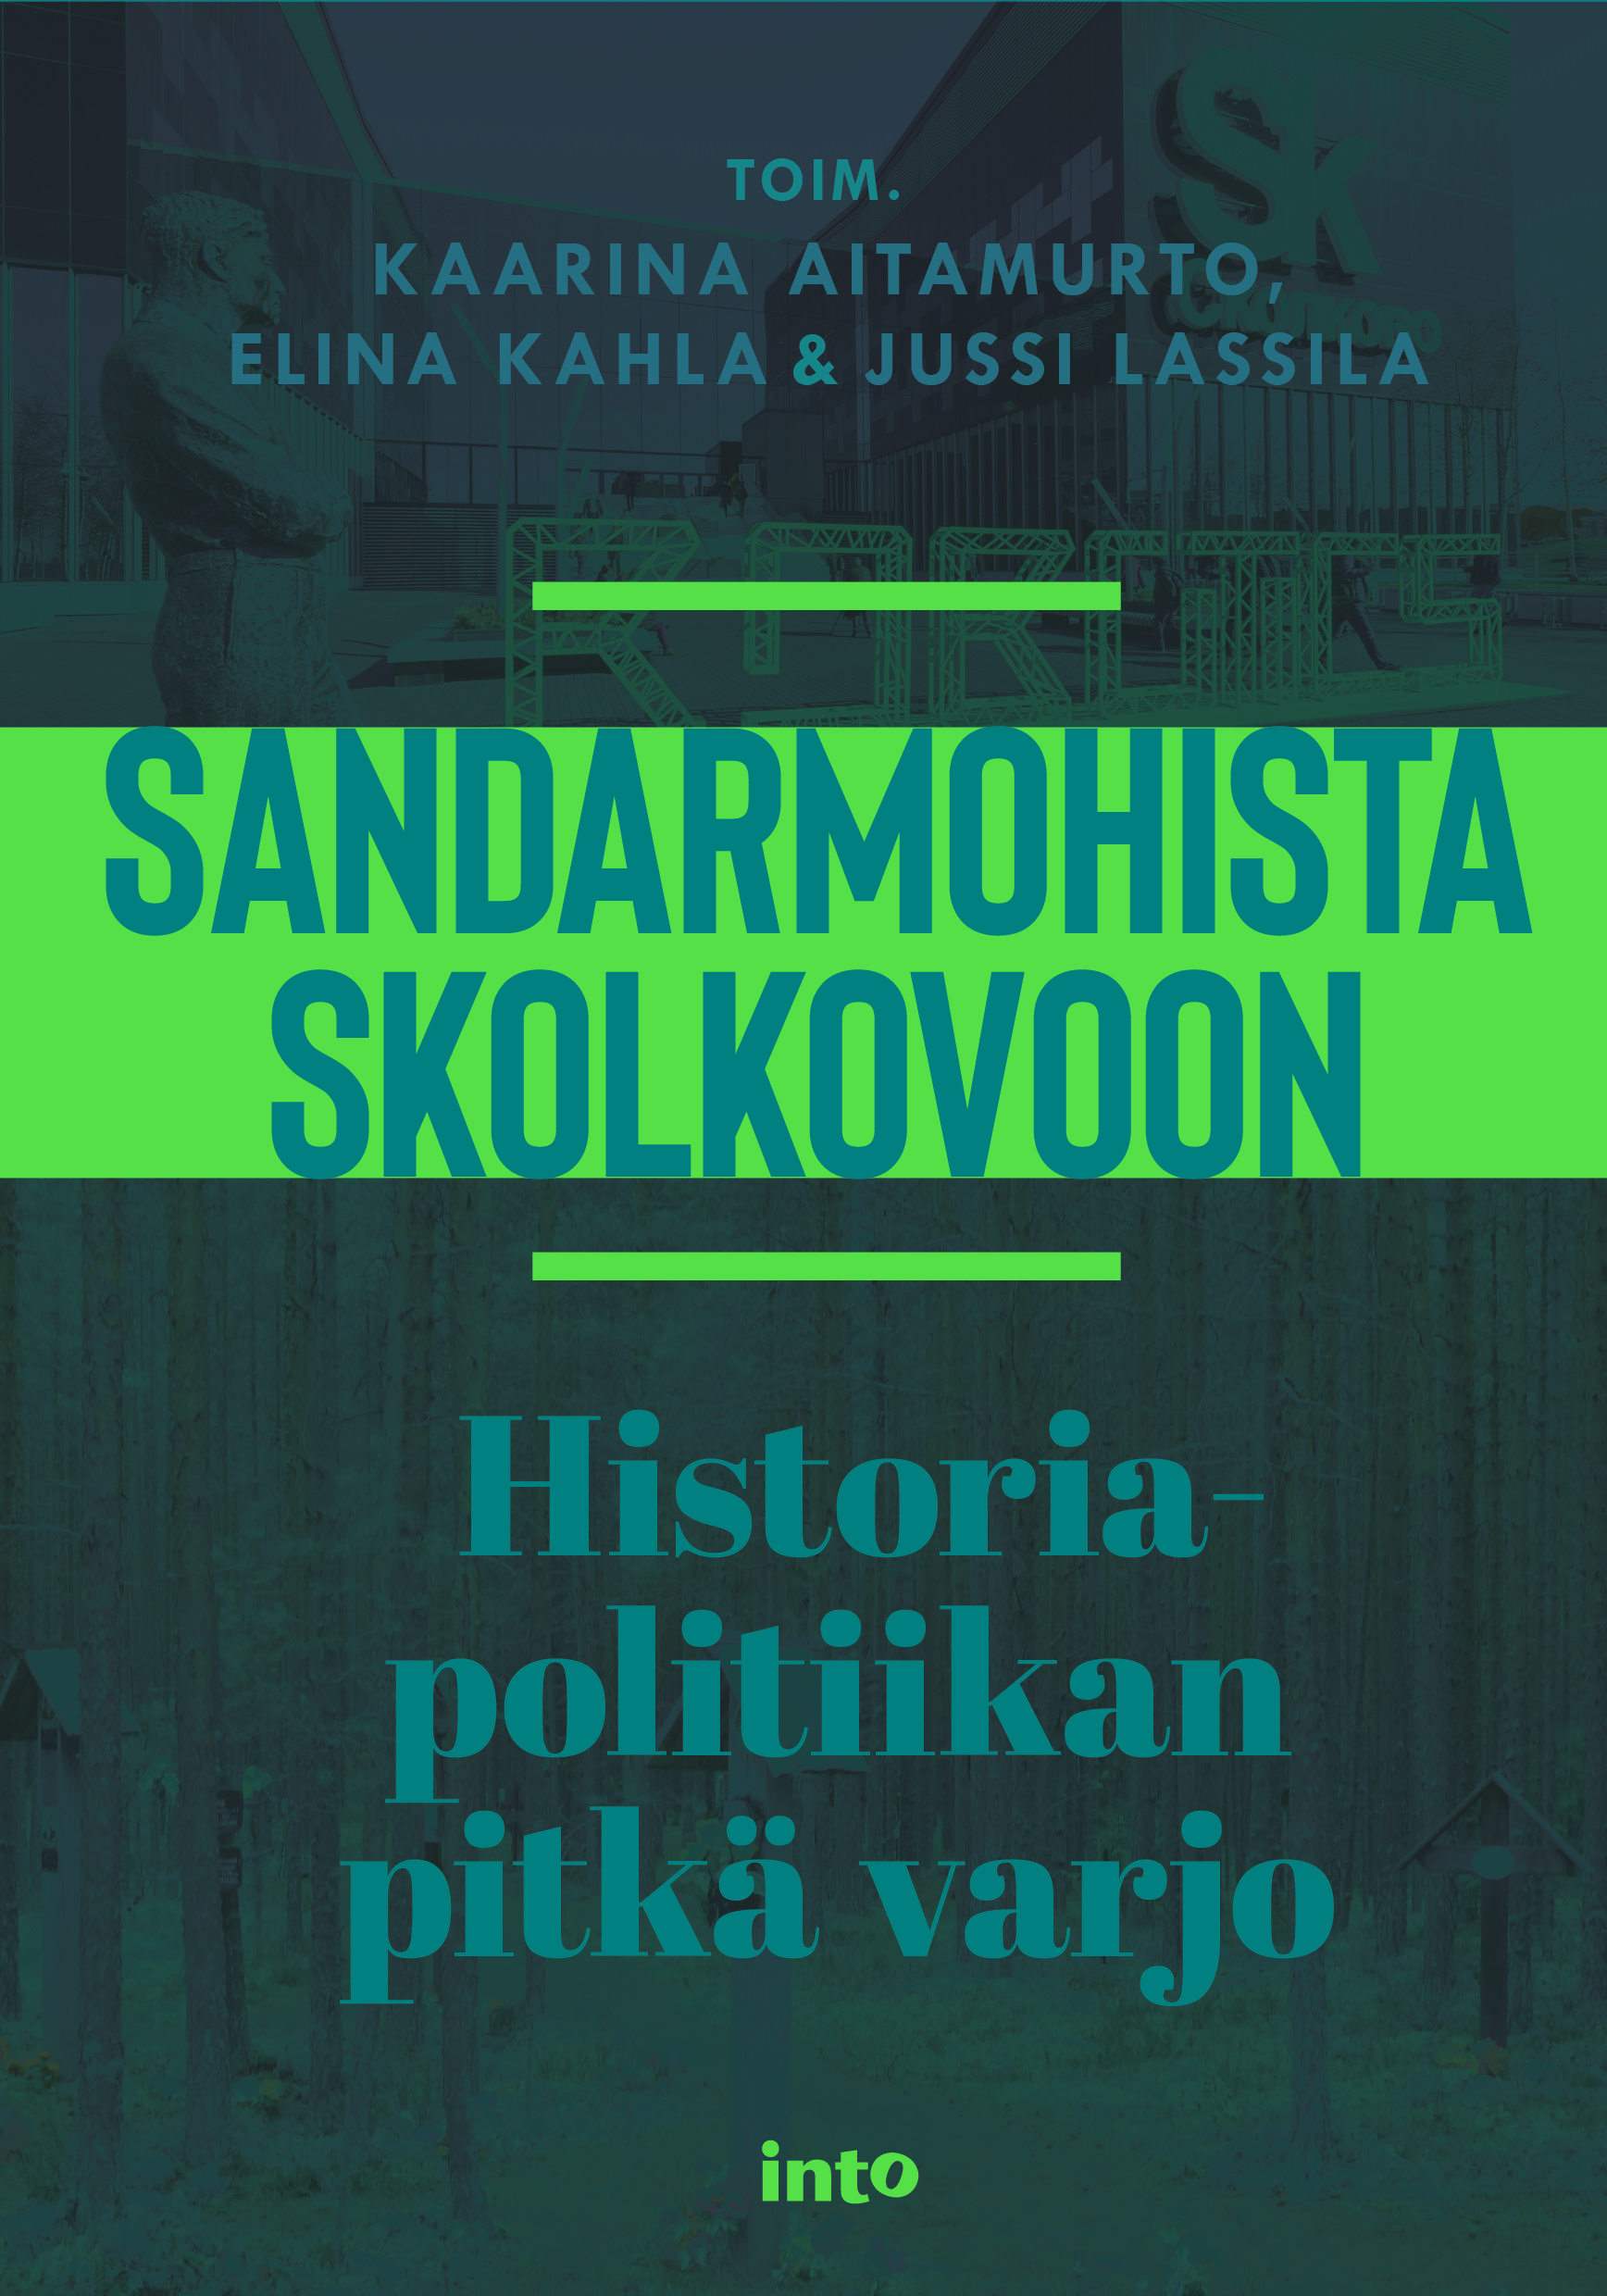 Aitamurto, Kaarina - Sandarmohista Skolkovoon: Historiapolitiikan pitkä varjo, e-kirja